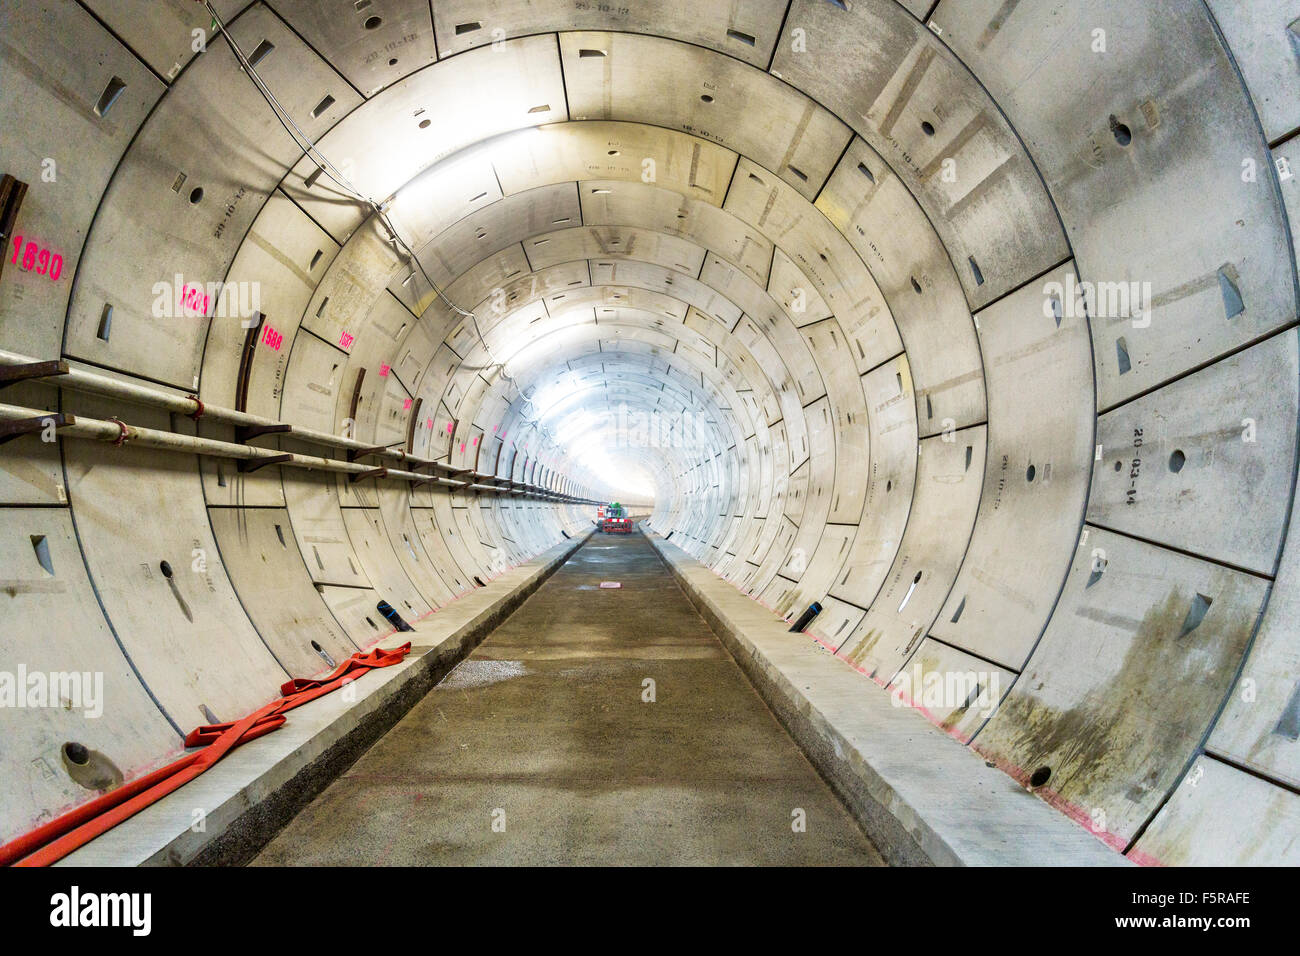 Londra, 10 aprile 2015: sezione del nuovo tunnel ferroviario in costruzione per il London Crossrail progetto a North Woolwich, Londra Foto Stock